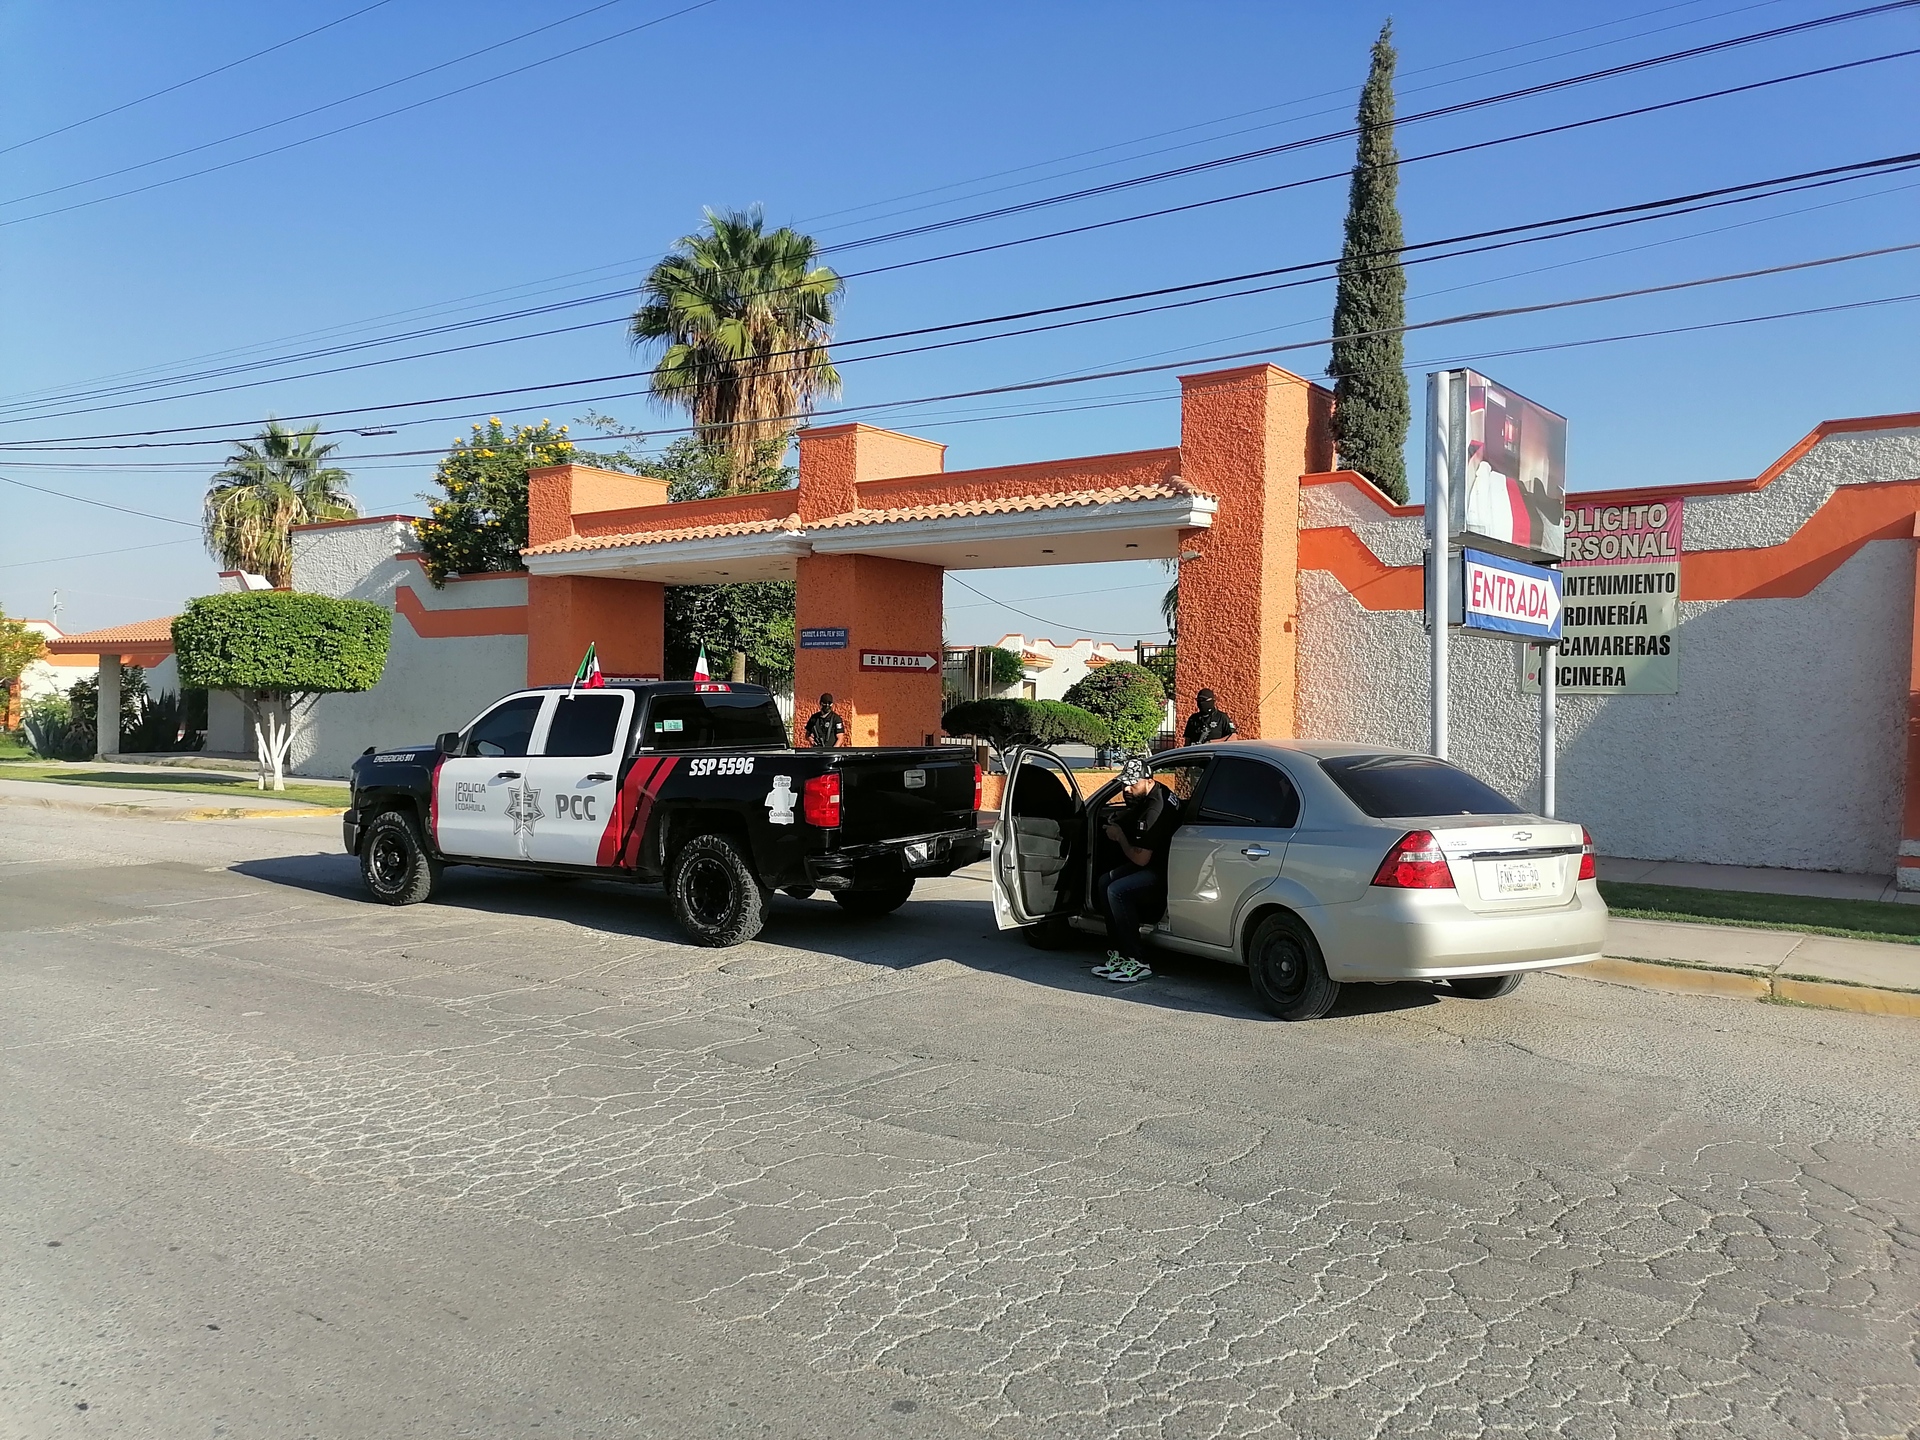 Localizan a mujer sin vida en motel de Torreón, primeras evidencias apuntan a suicidio